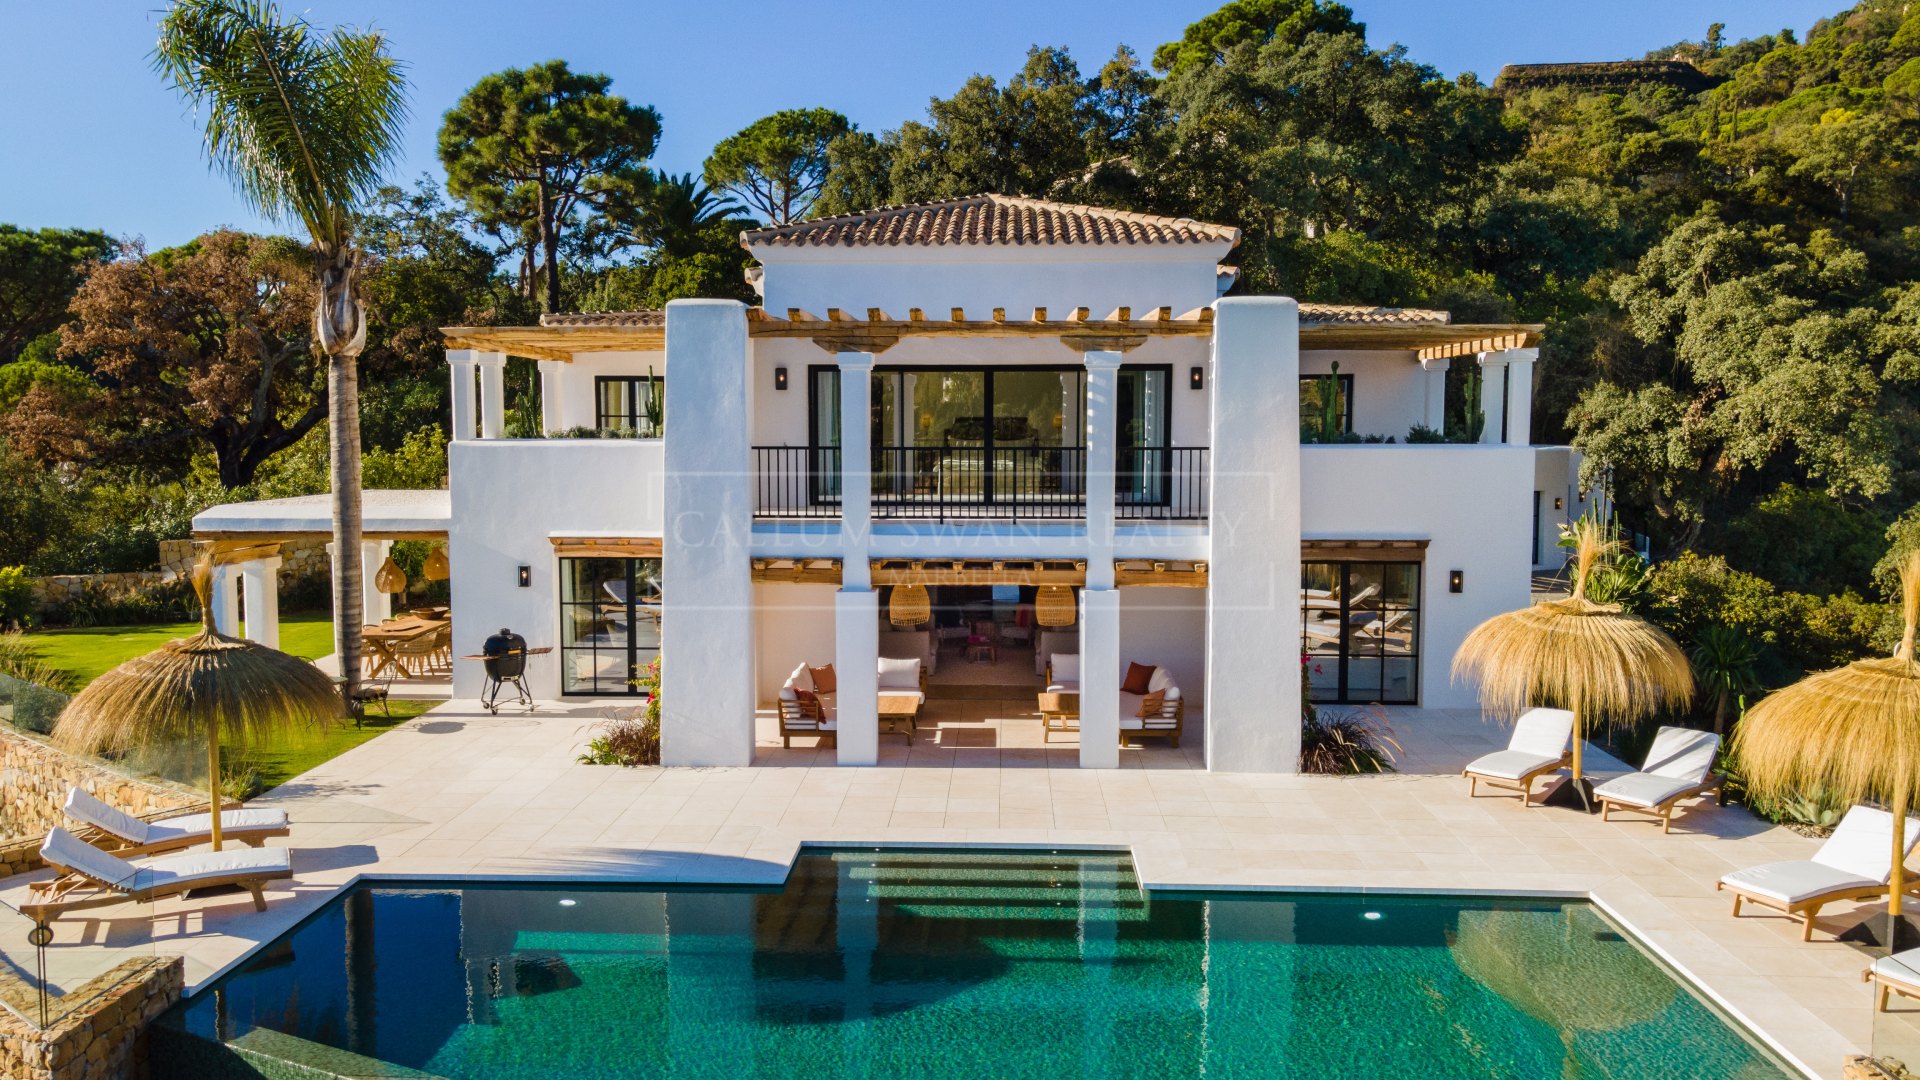 El Madroñal, family villa with breathtaking sea views